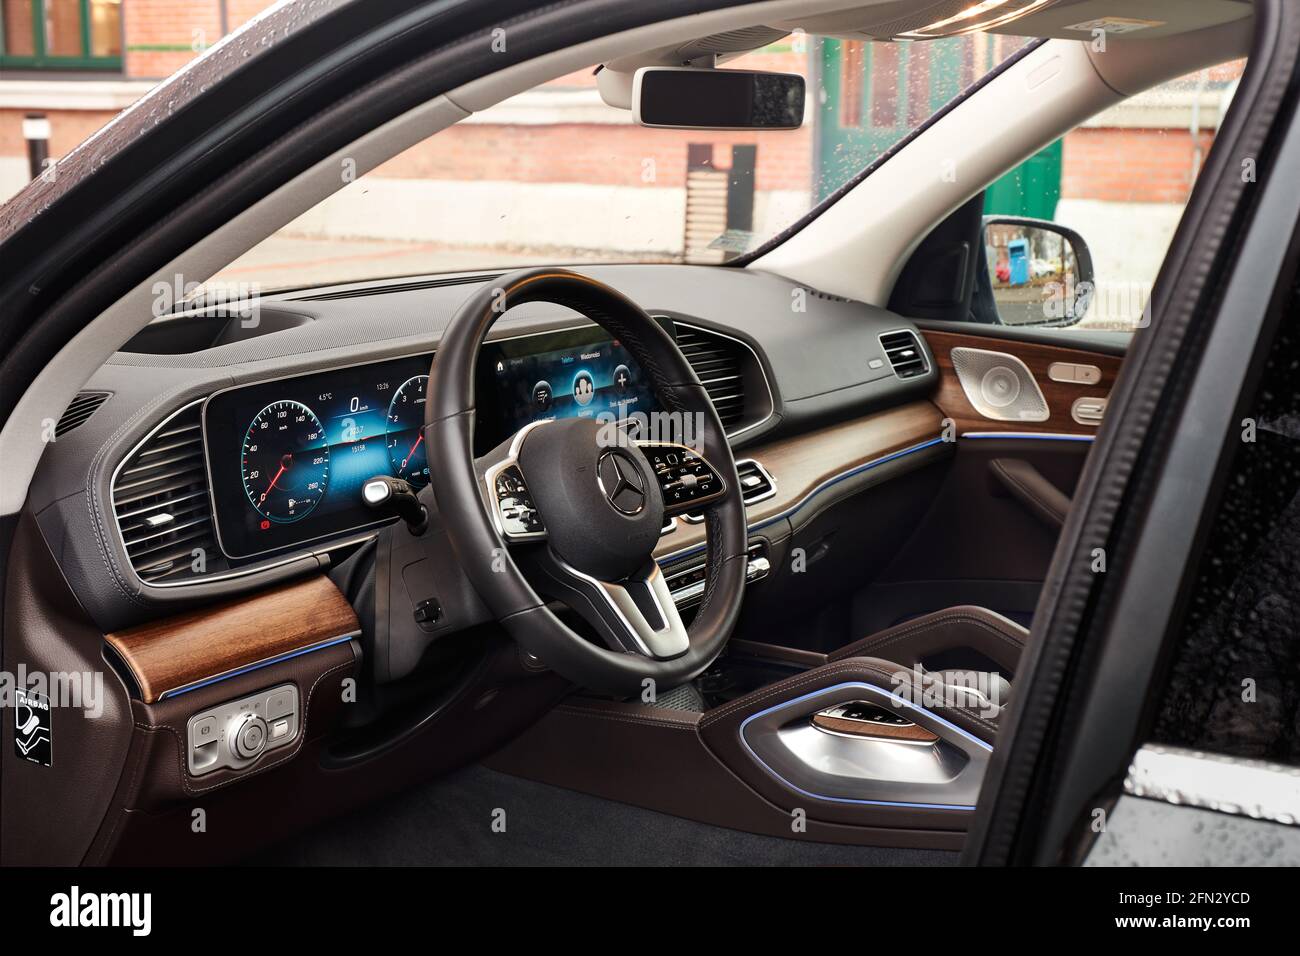 Ruda Slaska/Polen - 01.11.2020: Kabine des Luxus-Mercedes GLE mit echtem Holz und Leder und einem riesigen Multimedia-Bildschirm MBUX fertig. Stockfoto